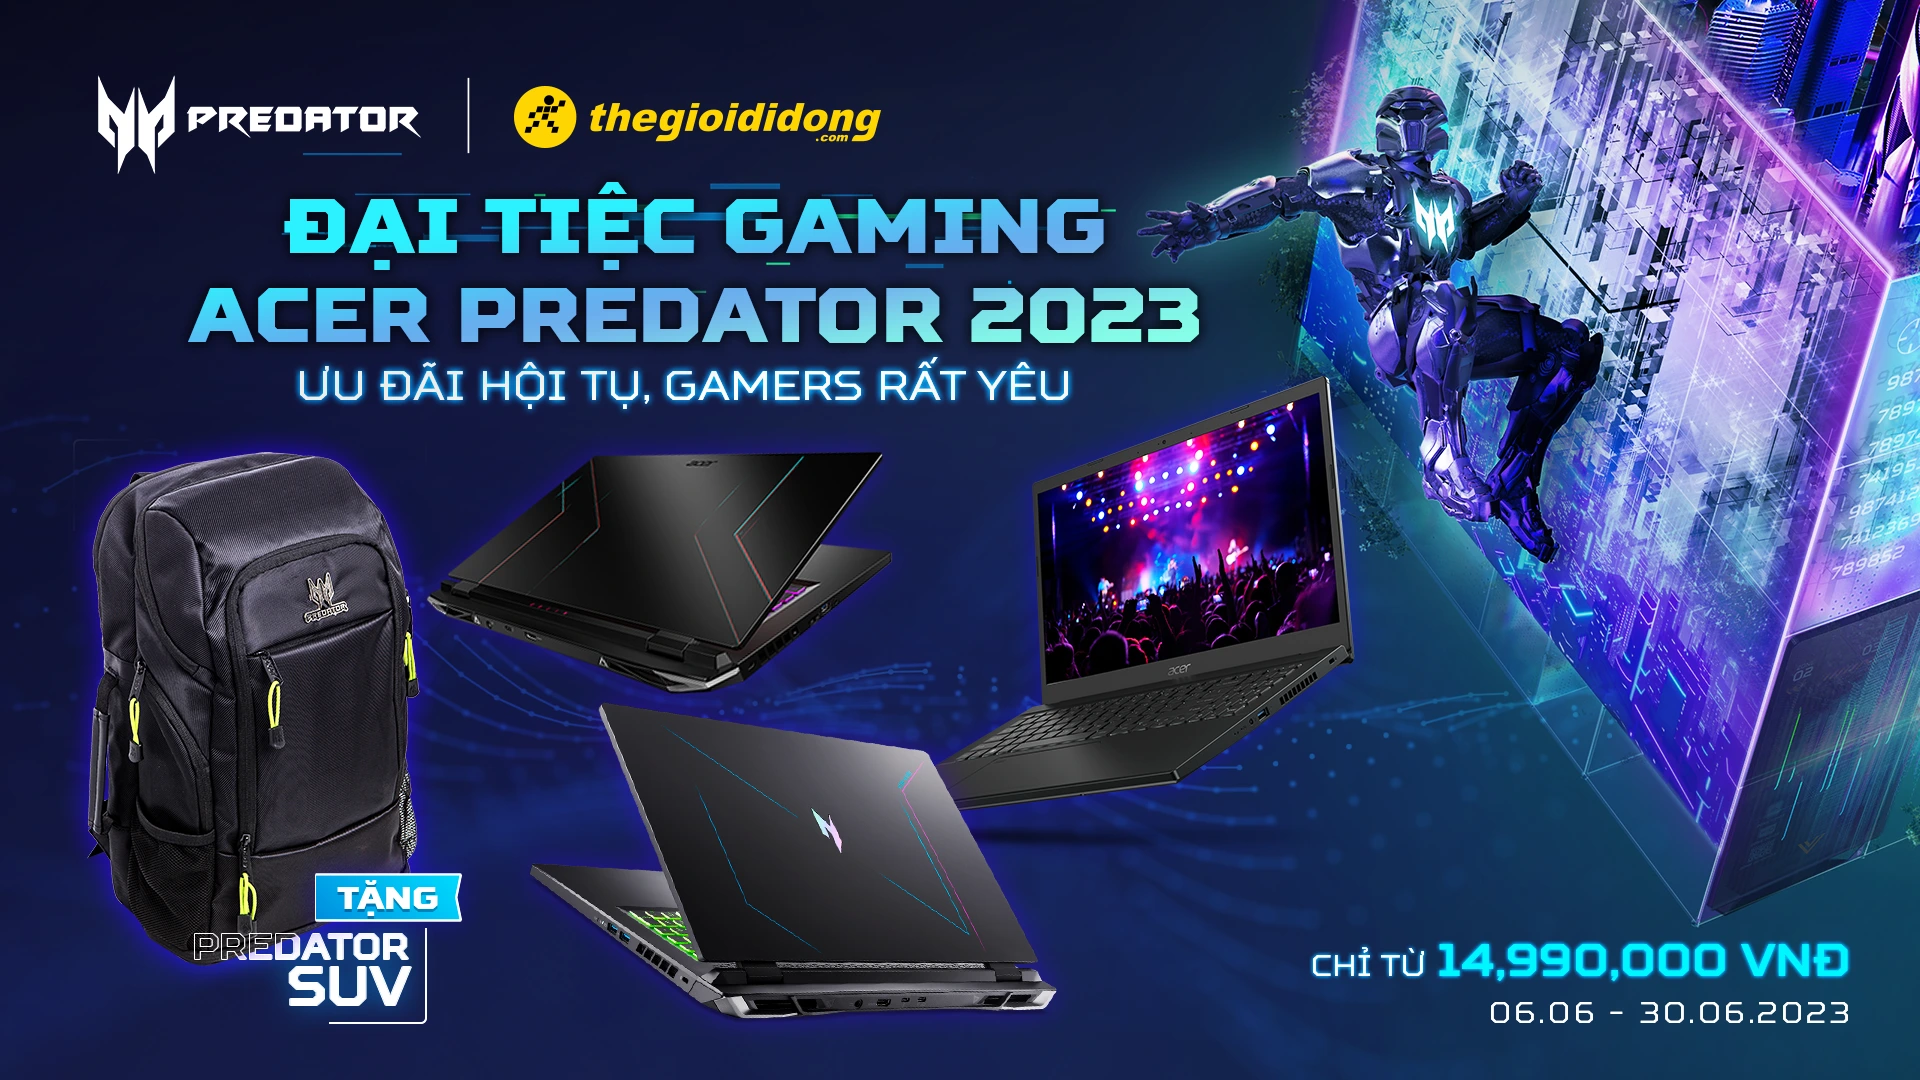 Đại Tiệc Gaming Acer Predator 2023 Tại Thế Giới Di Động - Mua Laptop Gaming Quốc Dân Acer Giá Ưu Đãi, Tặng Balo SUV